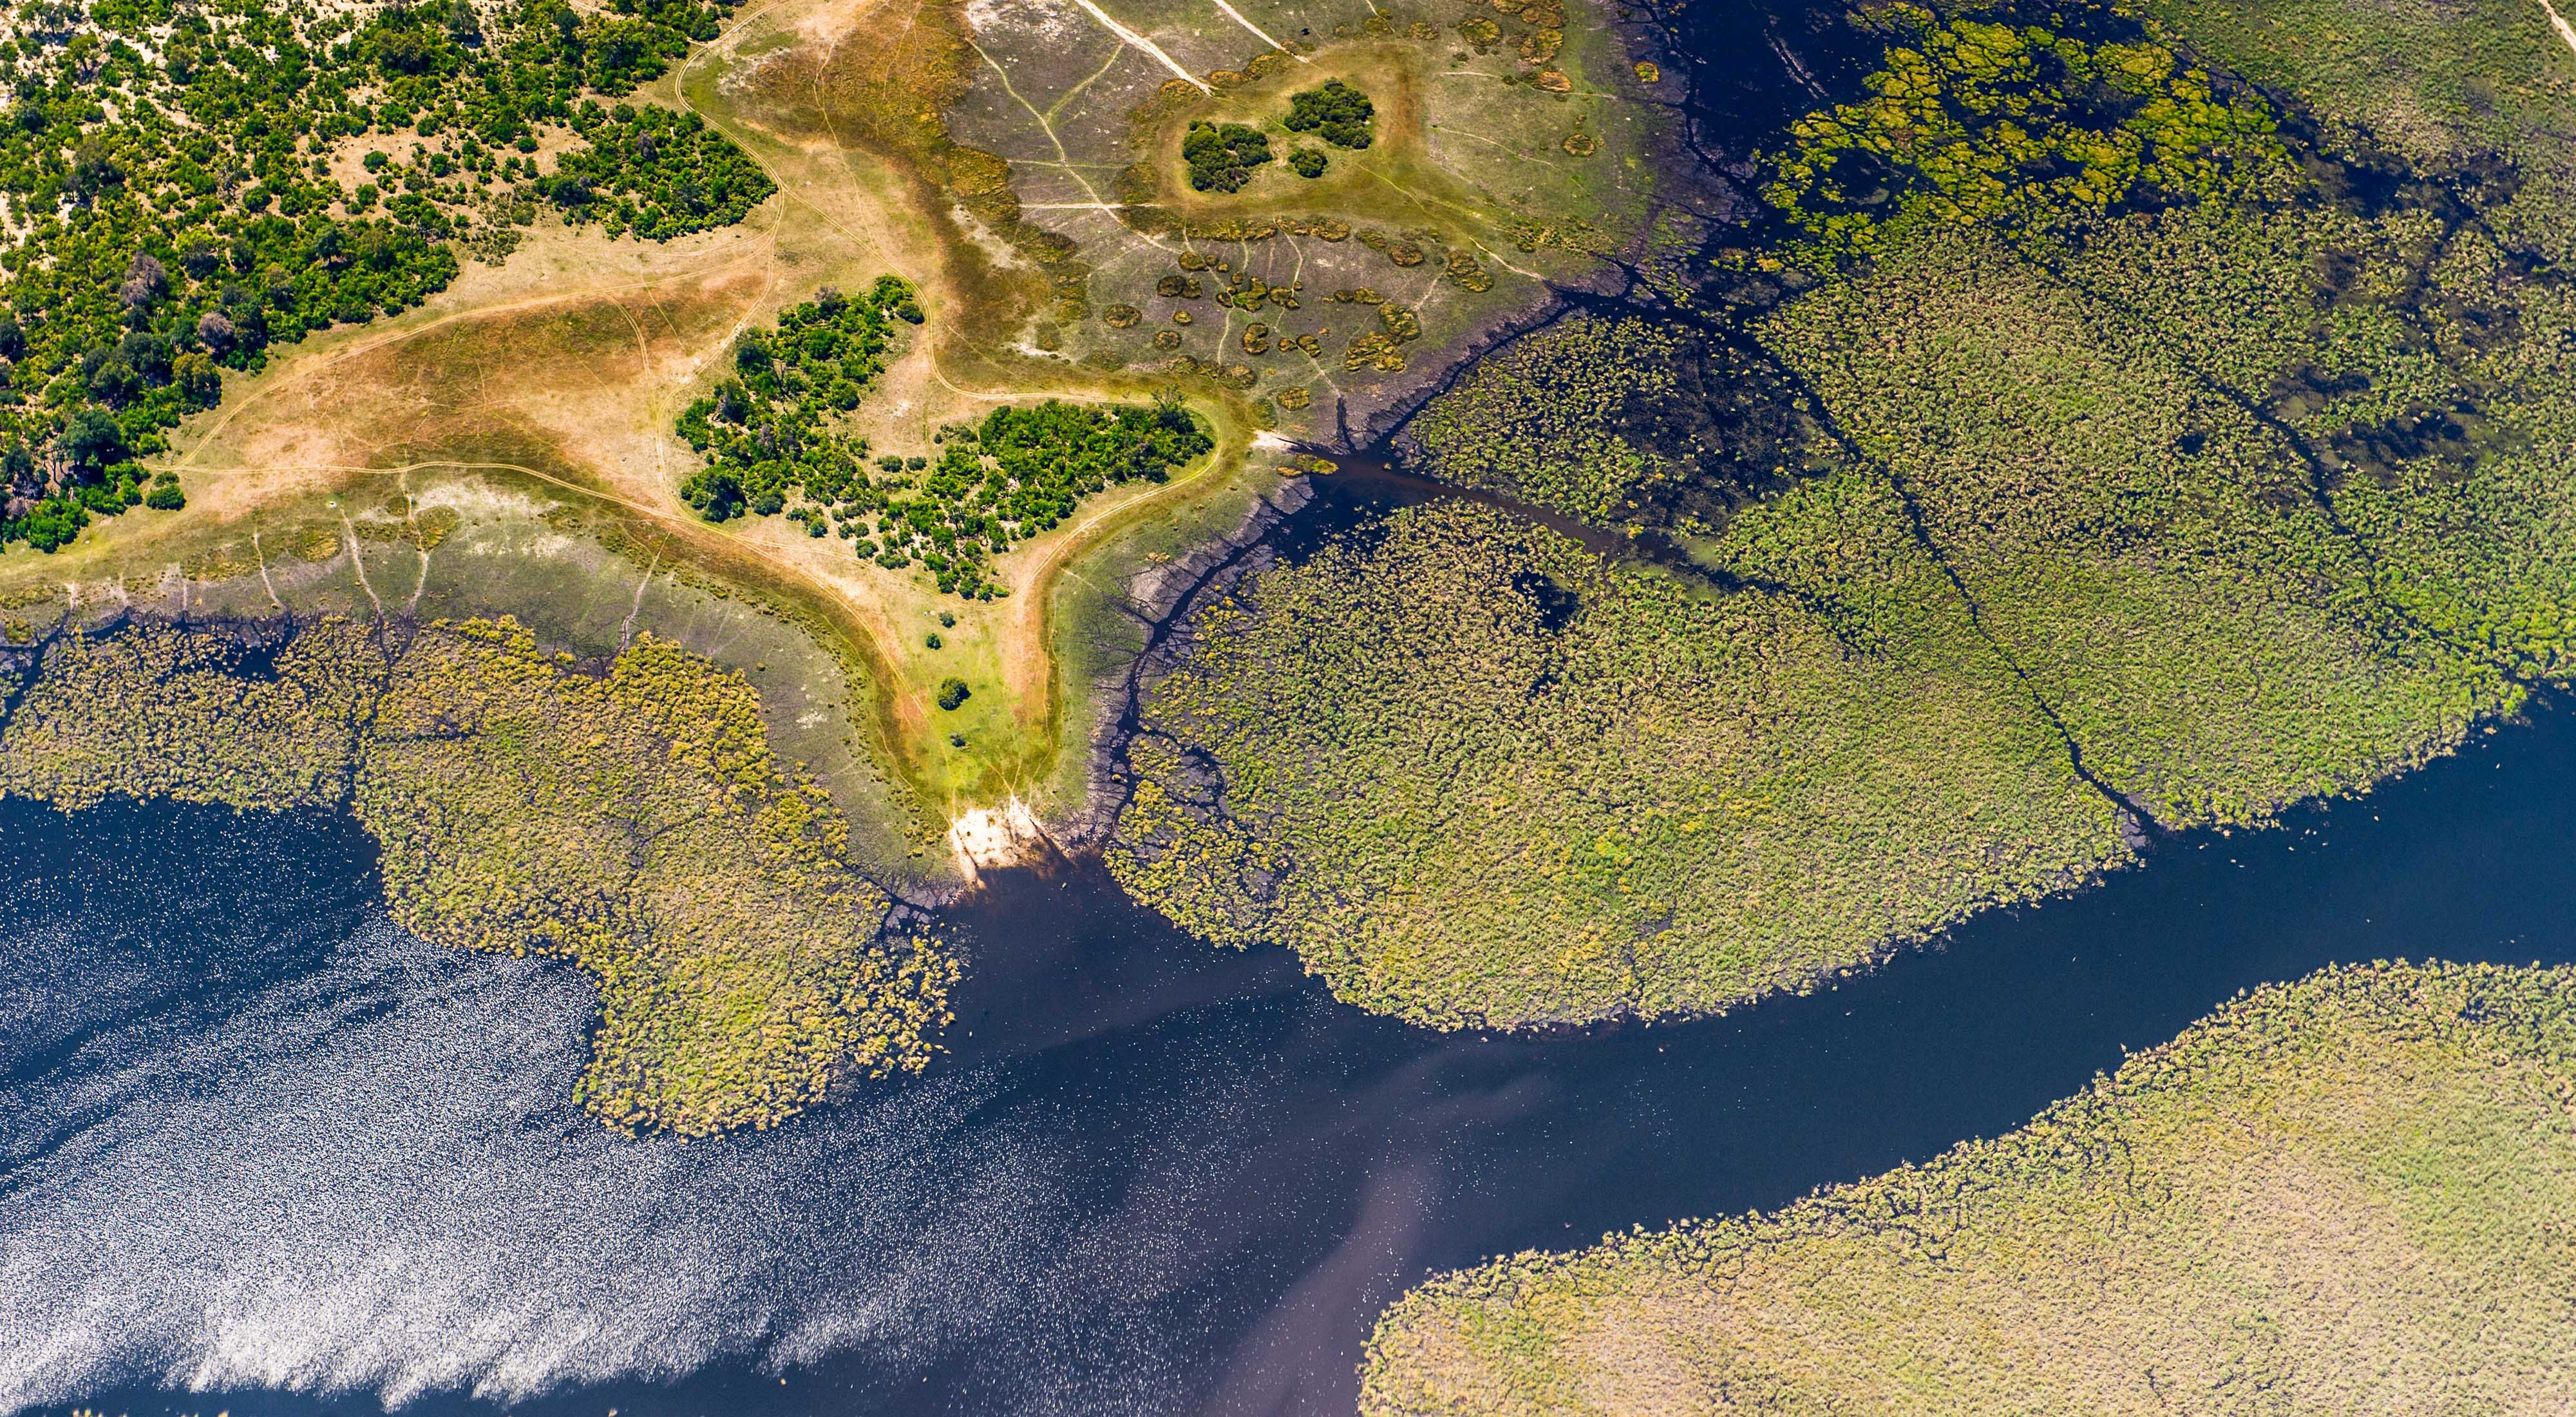 Aerial view of Okavango delta